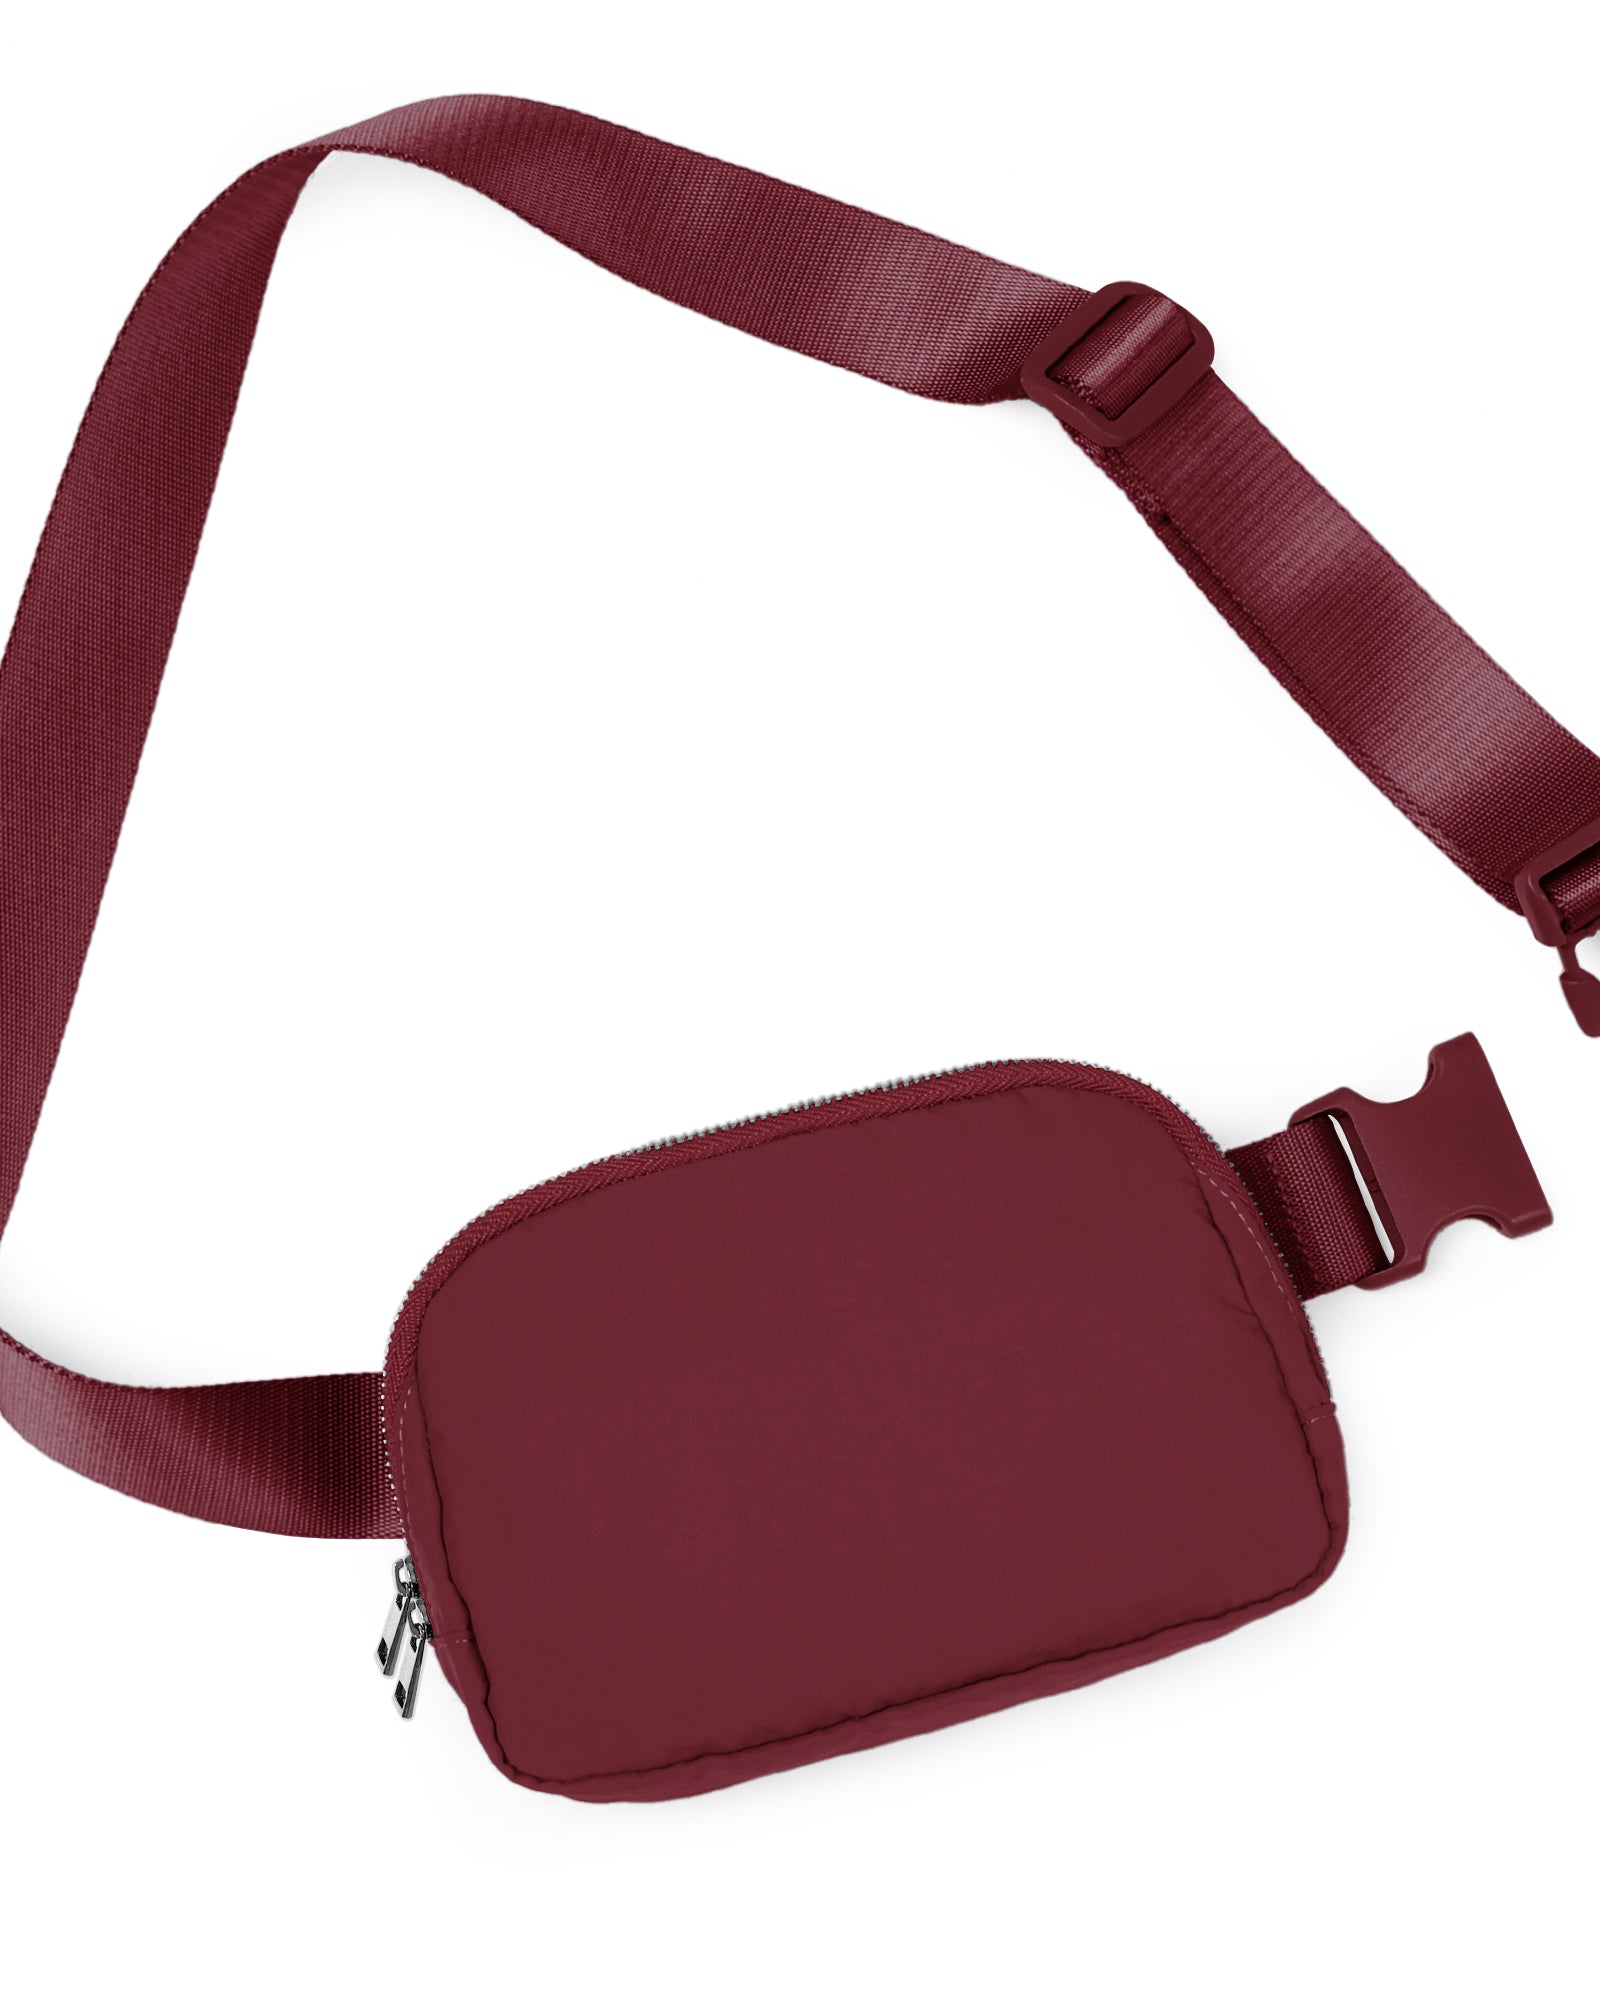 Unisex Two-Way Zip Mini Belt Bag Wine 8" x 2" x 5.5" - ododos